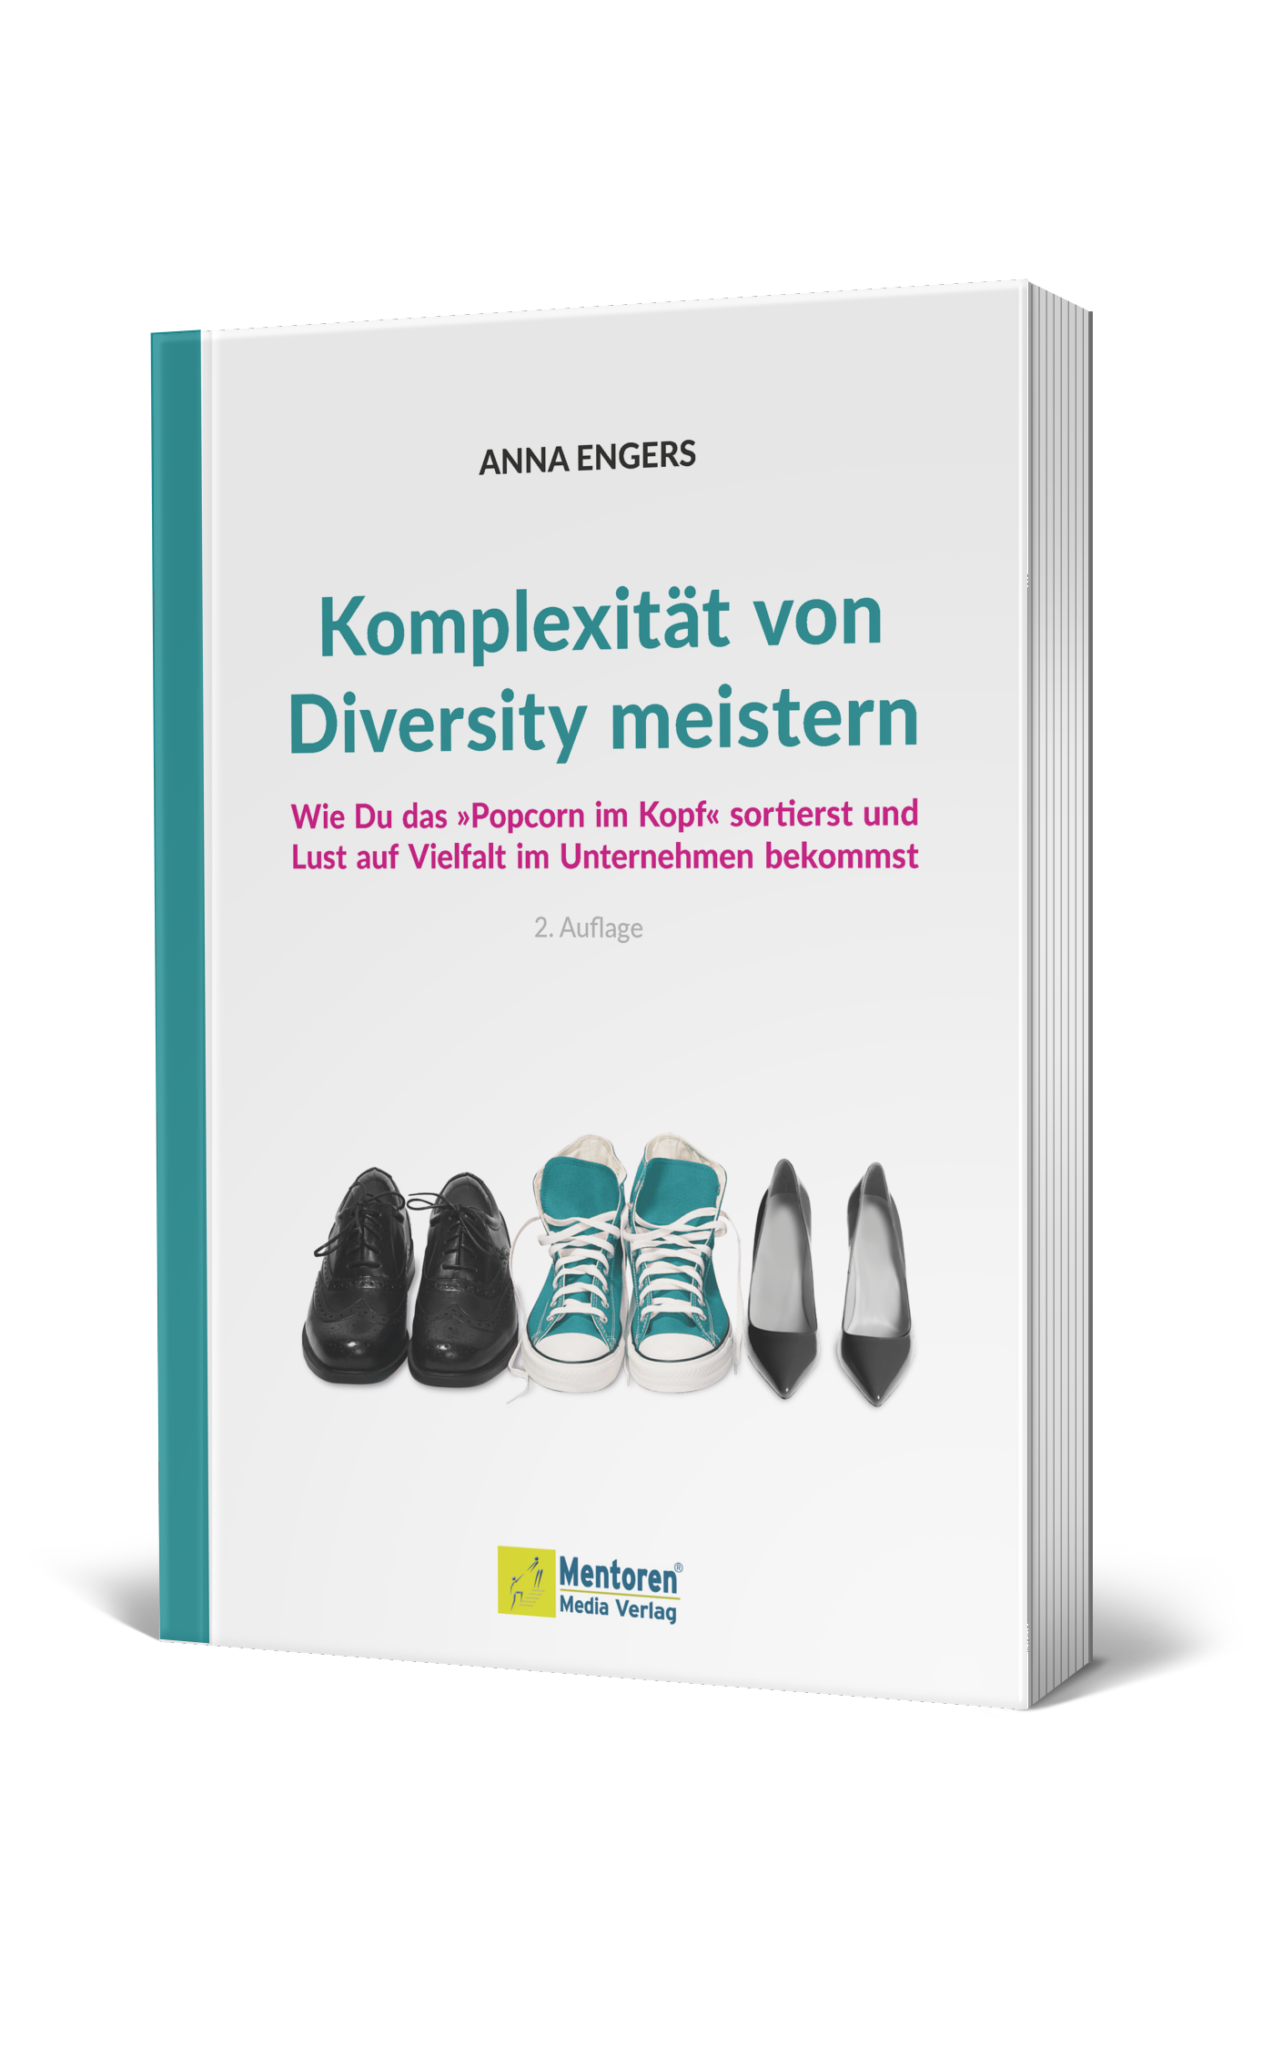 Buch von Anna Engers - Komplexität von Diversity meistern